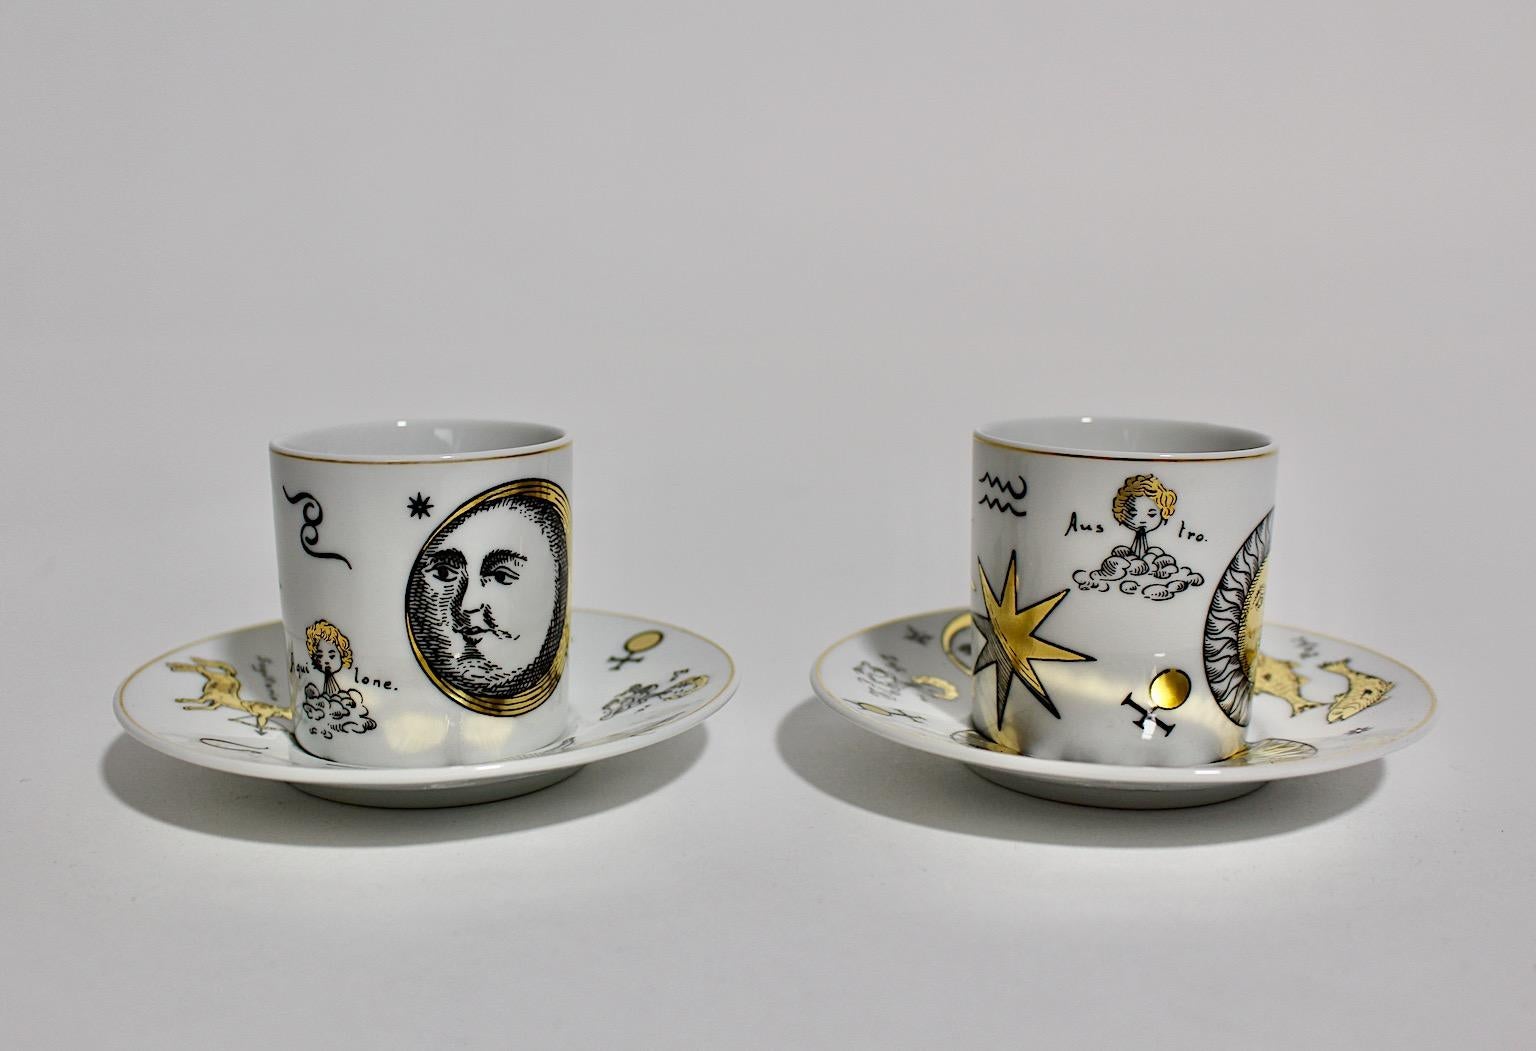 Ensemble de deux tasses à expresso modernes et vintage en porcelaine conçues par 
Piero Fornasetti pour Rosenthal dans les années 1980.
Superbe ensemble de tasses à expresso duo en porcelaine avec motif imprimé et soucoupe de Piero Fornasetti pour